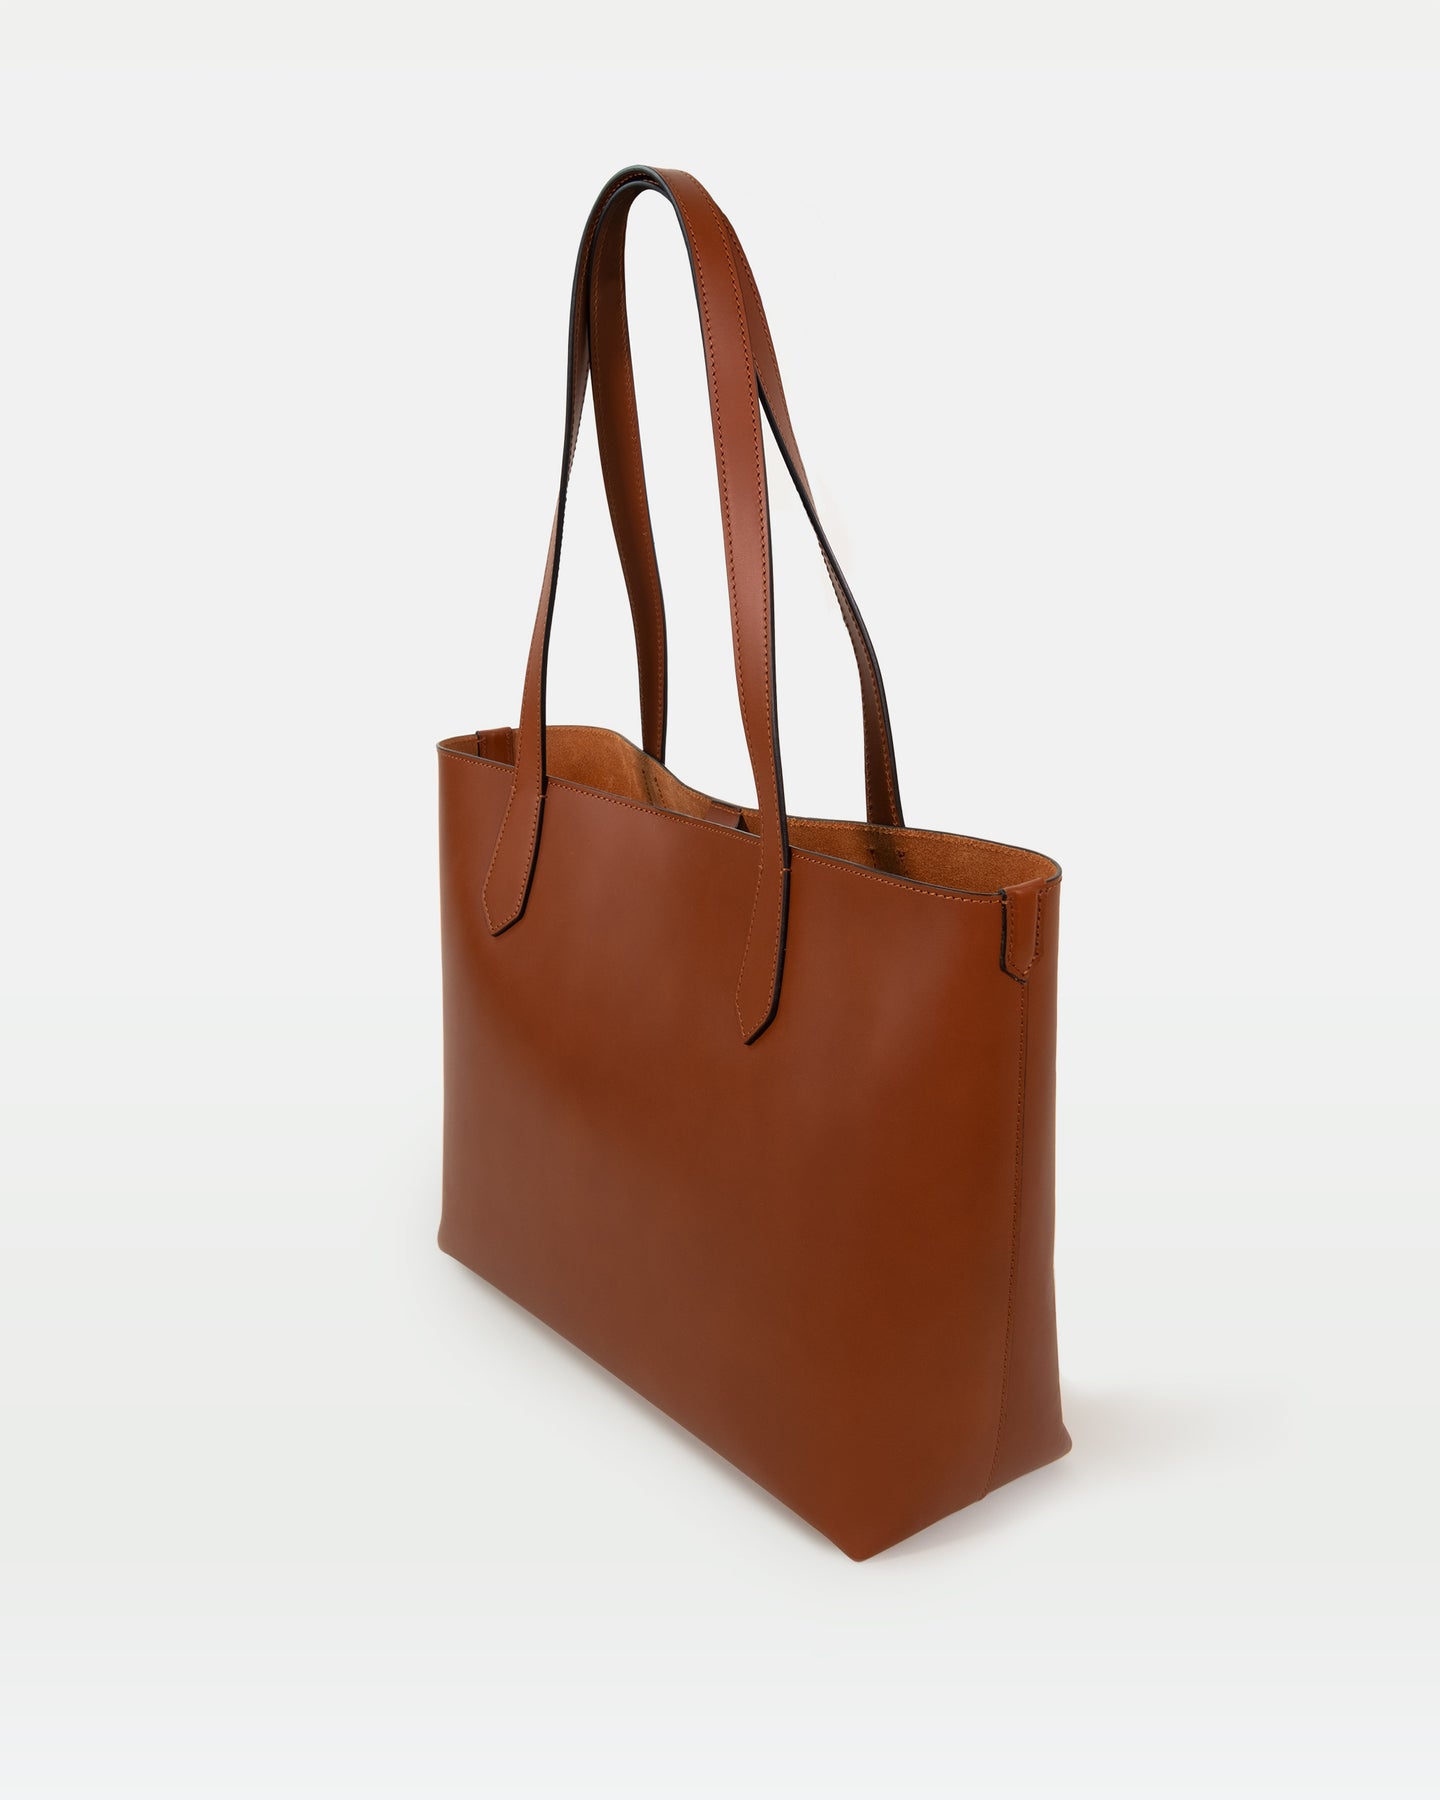 Natural Tan Leather Tote Bag 